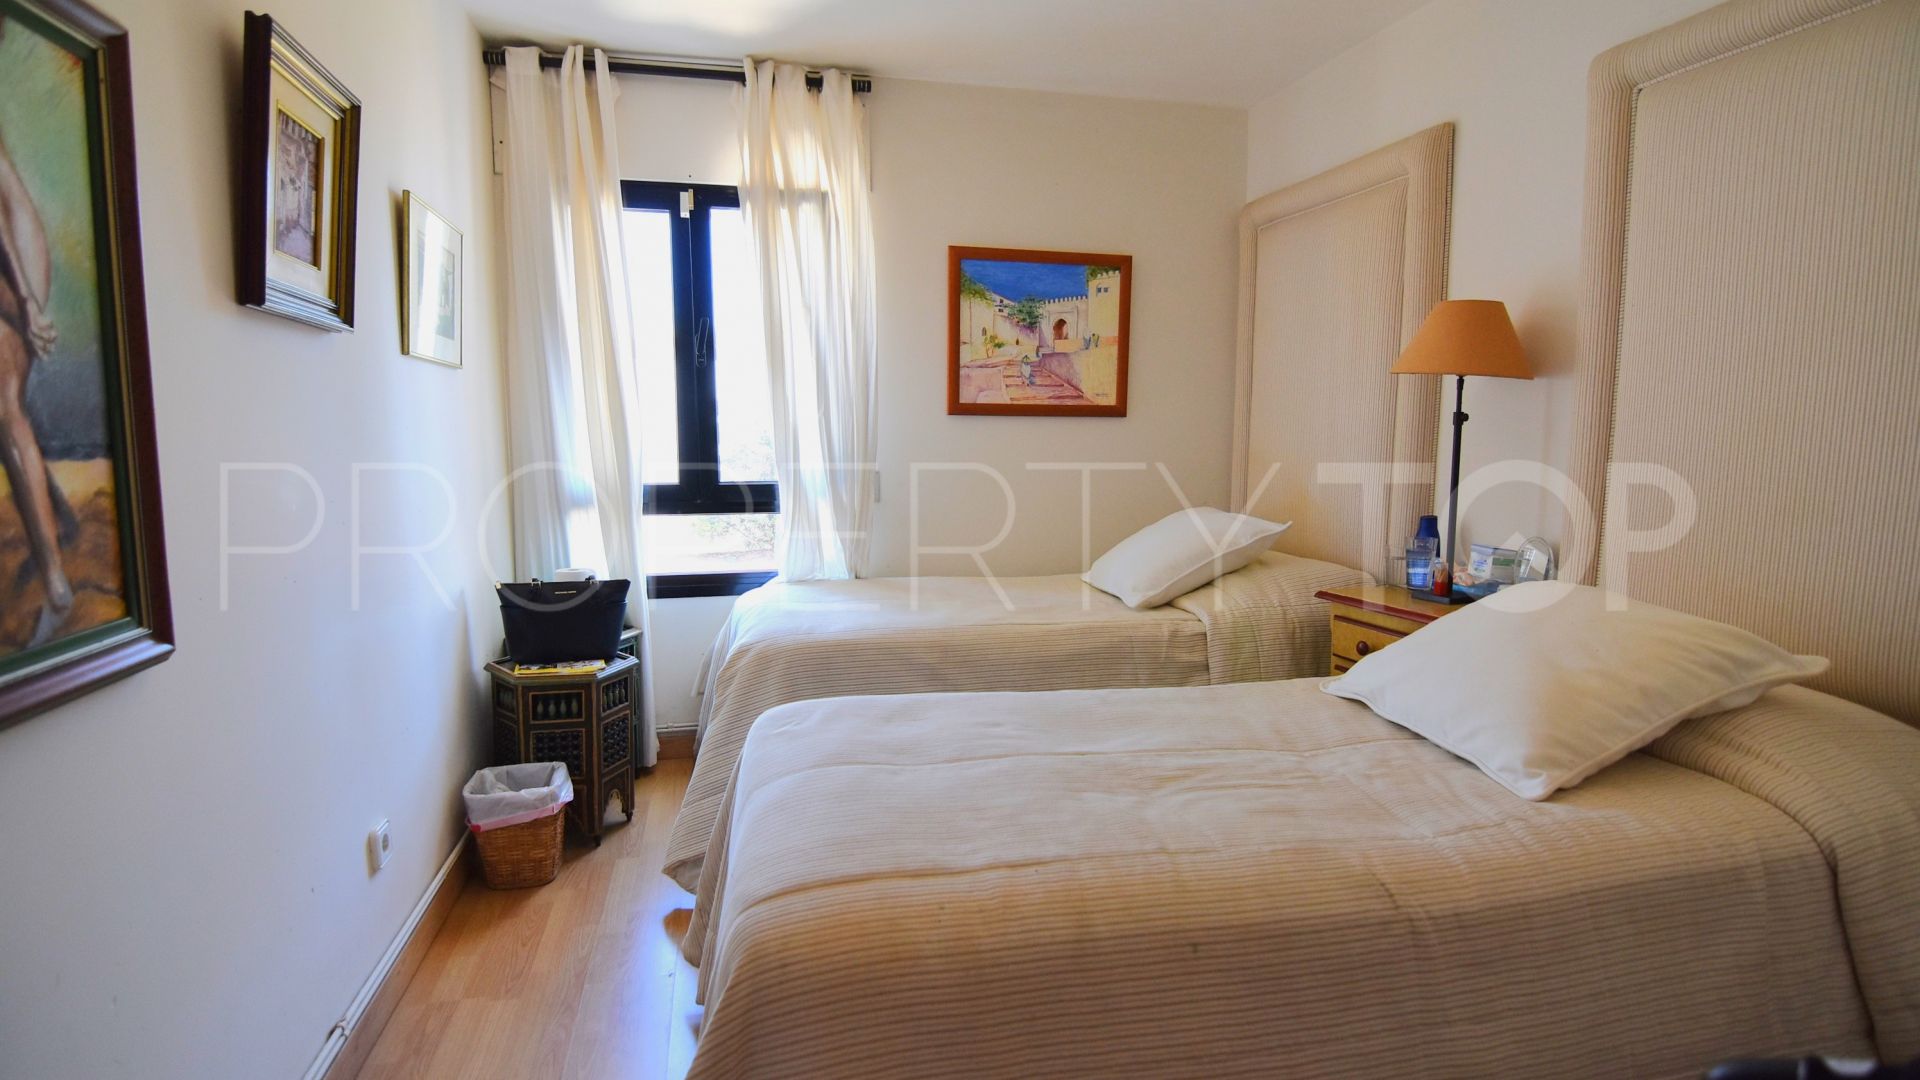 Sotogrande Playa, apartamento planta baja de 5 dormitorios en venta